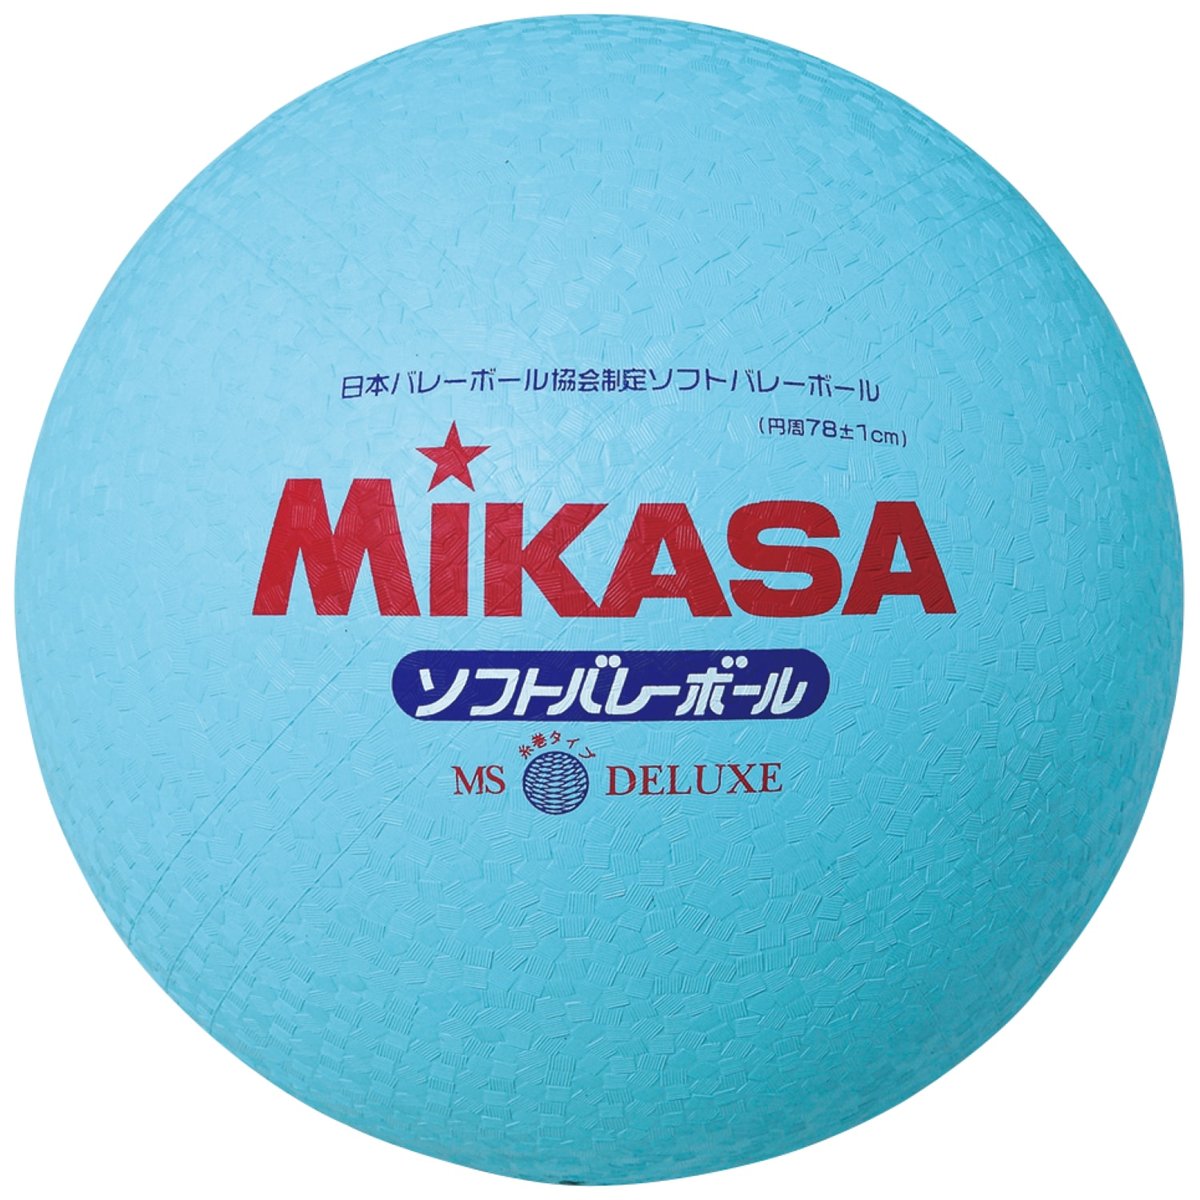 Piłka Do Siatkówki Mikasa Ms-78-Dx Blue